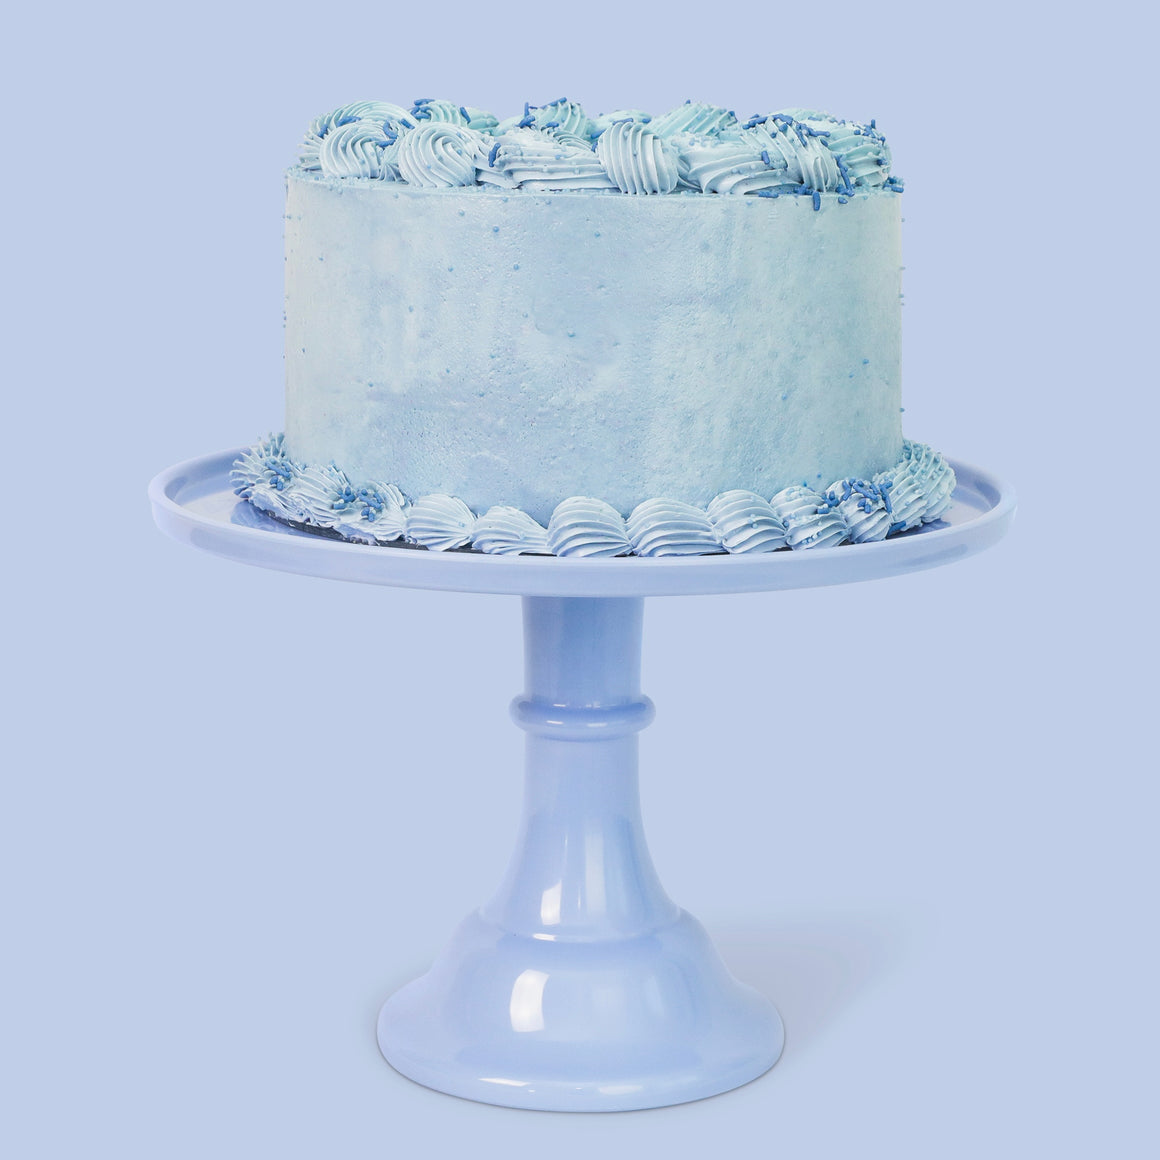 CAKE STAND - MELAMINE BLUE WEDGEWOOD LARGE